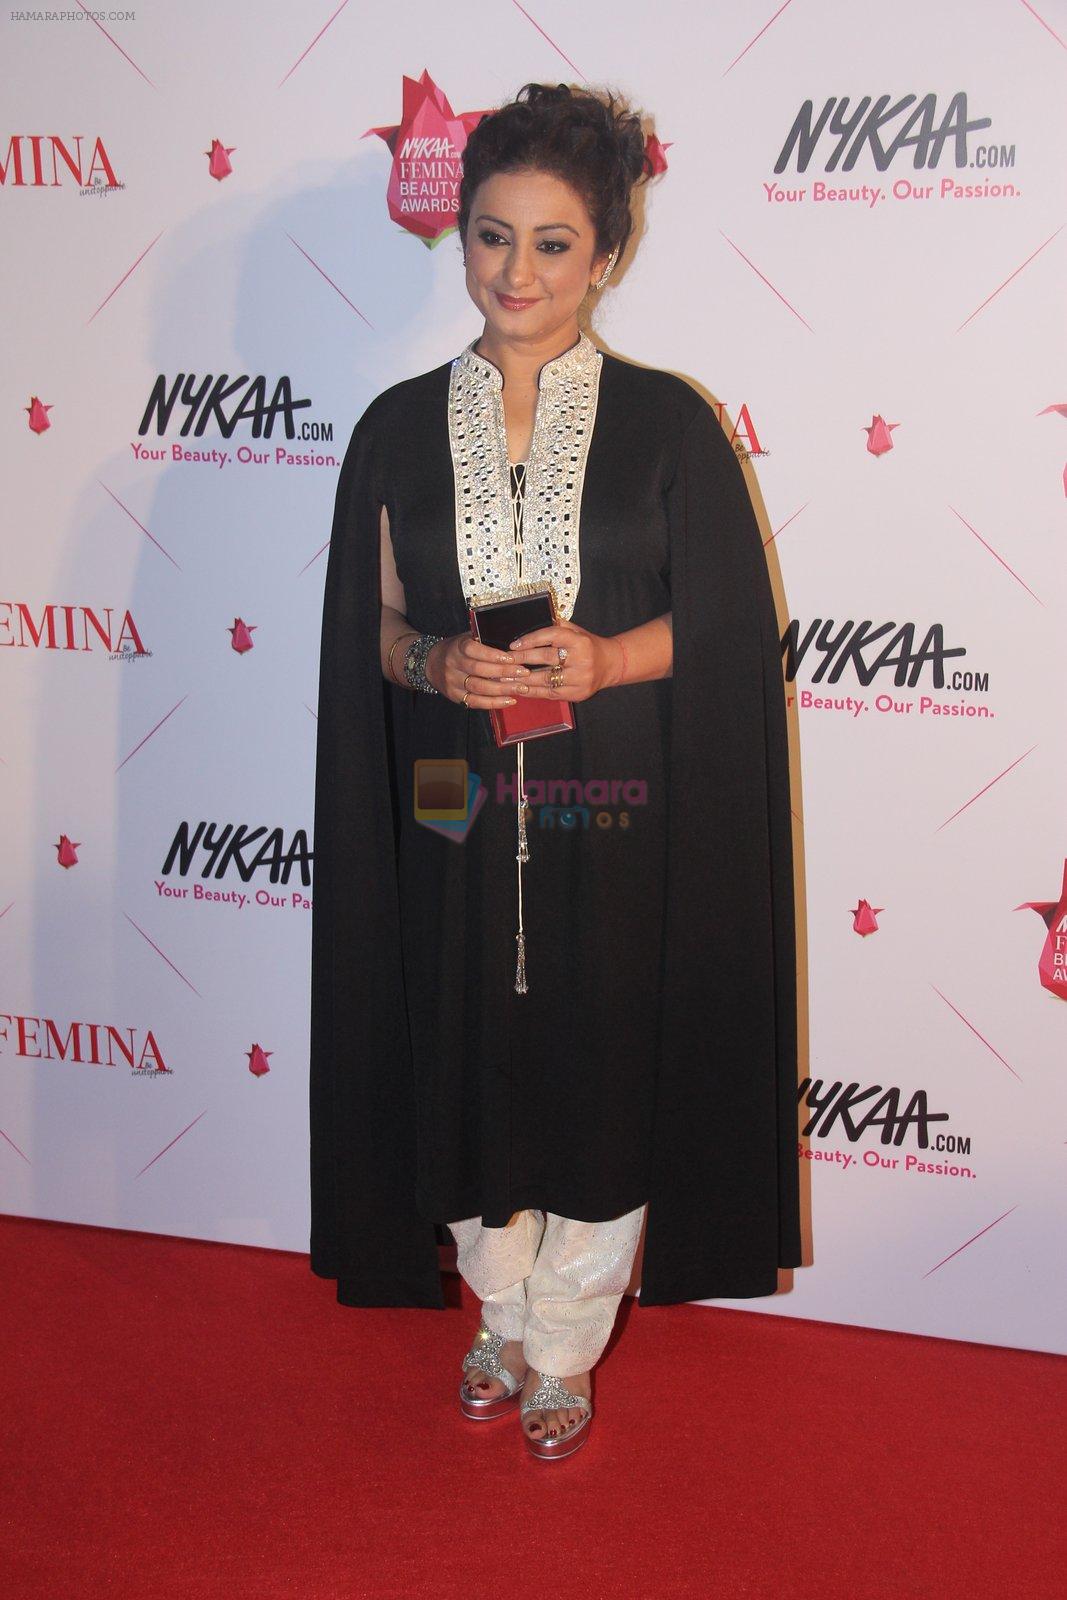 Divya Dutt at Femina Beauty Awards in Mumbai on 5th Feb 2016